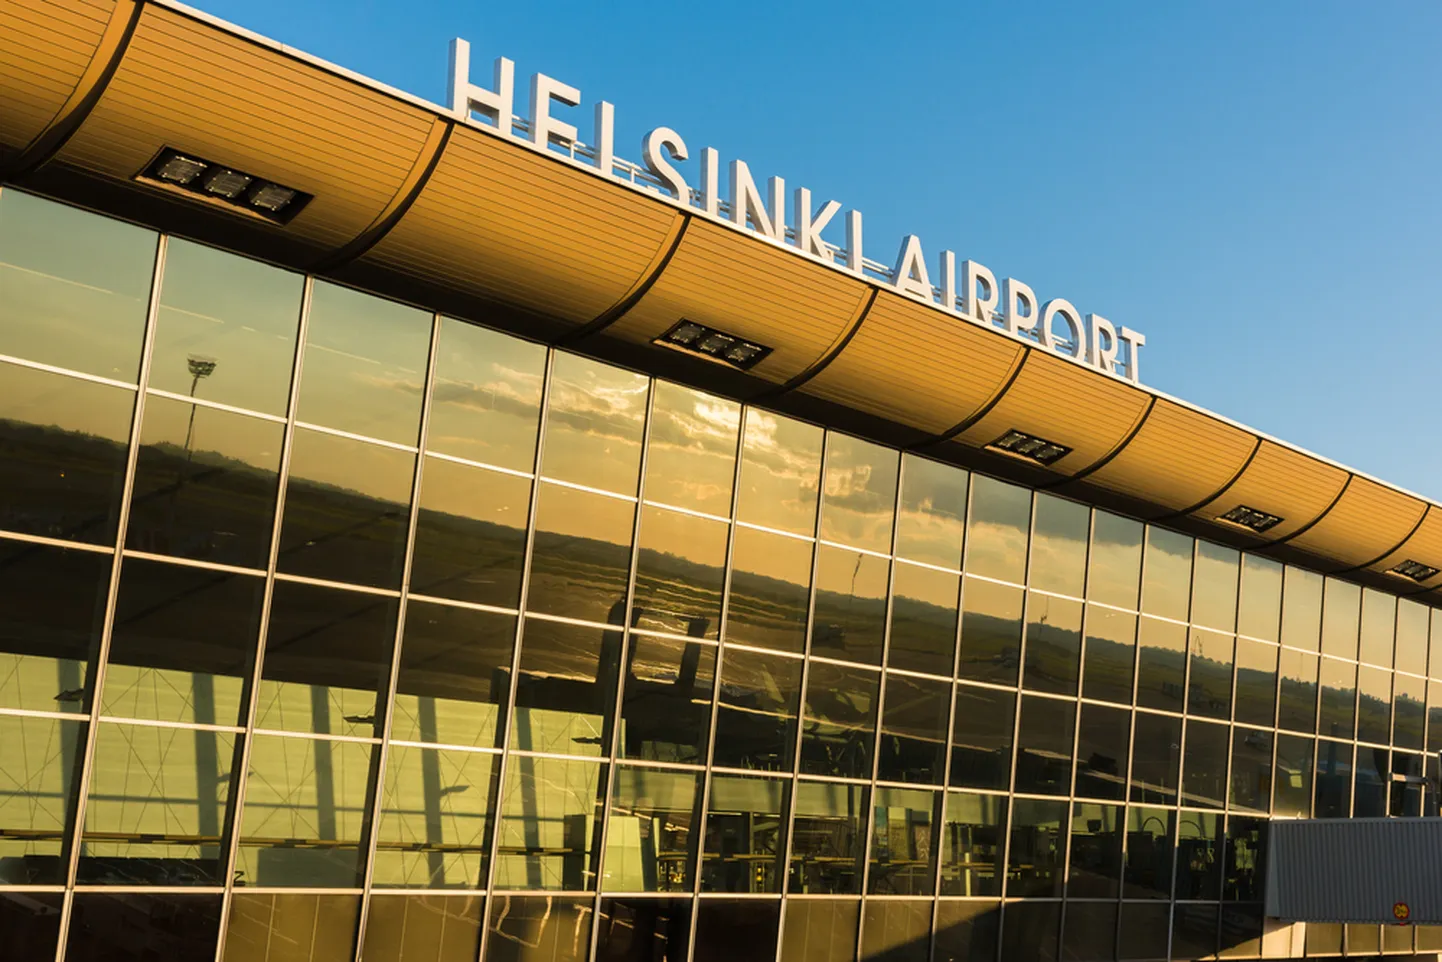 Helsingi lennujaam.